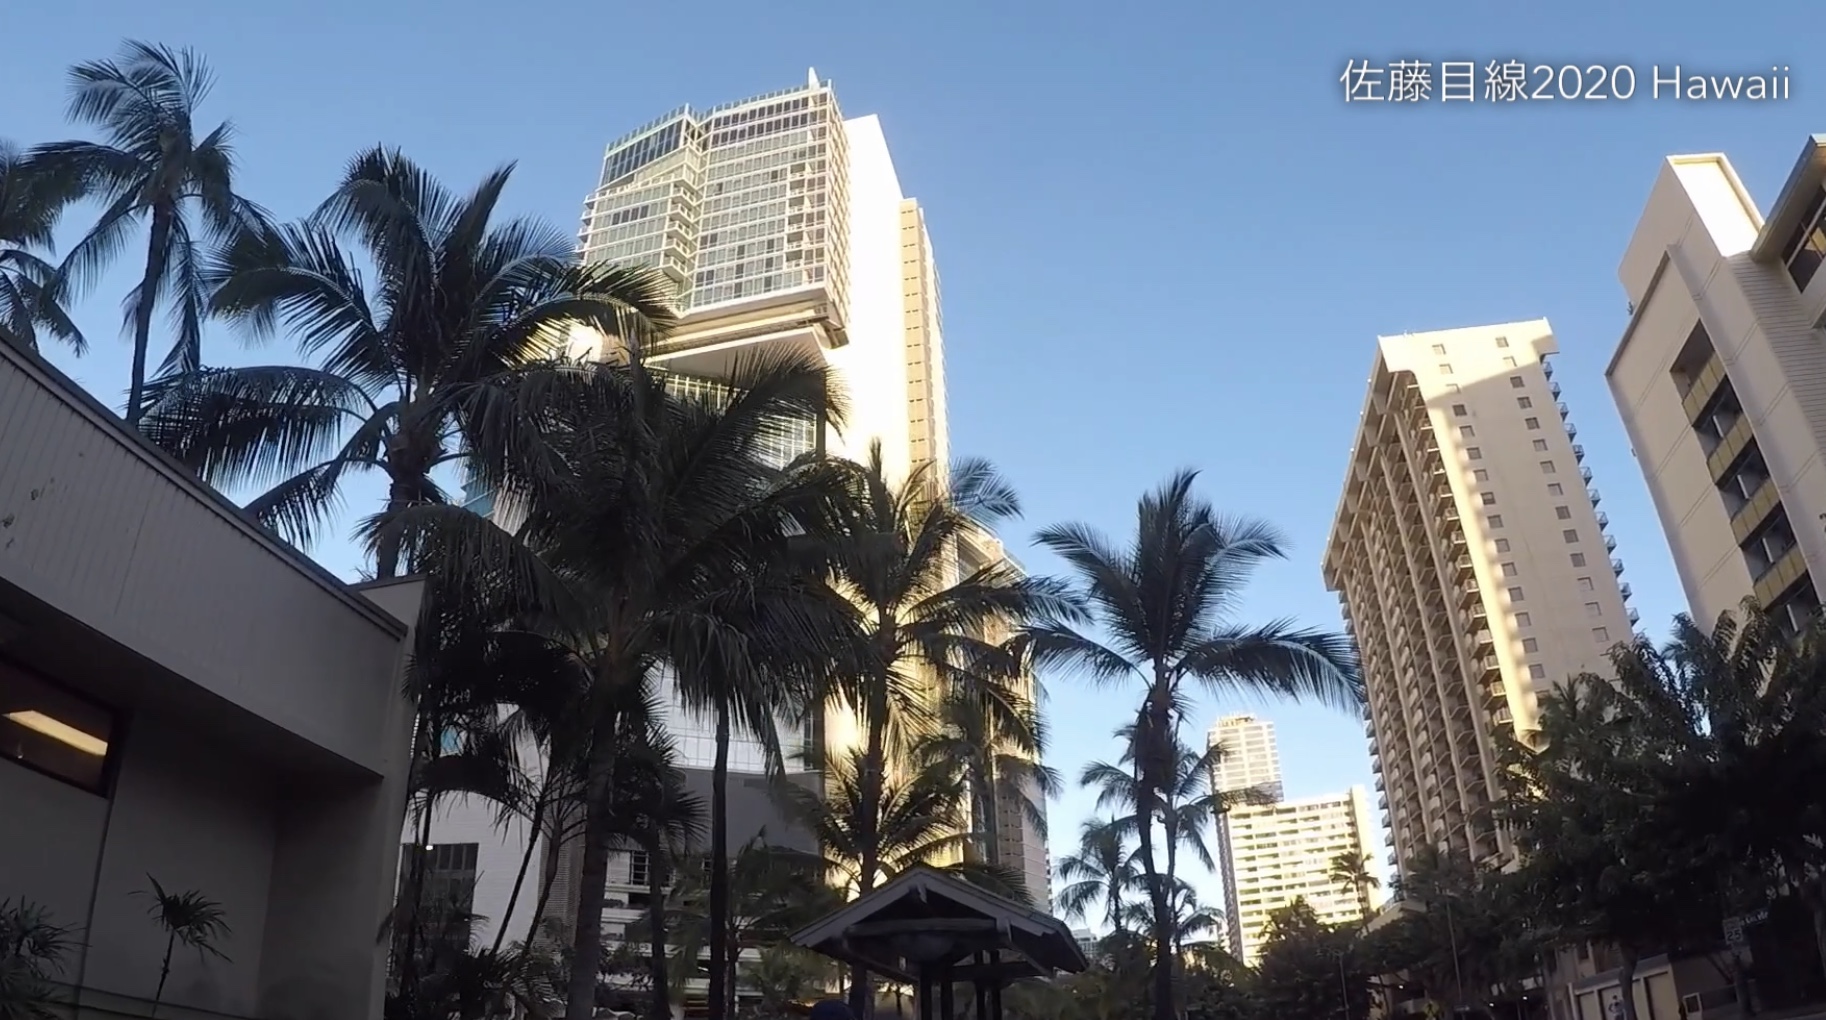 佐藤目線2020 Hawaii -Waikiki散歩編-